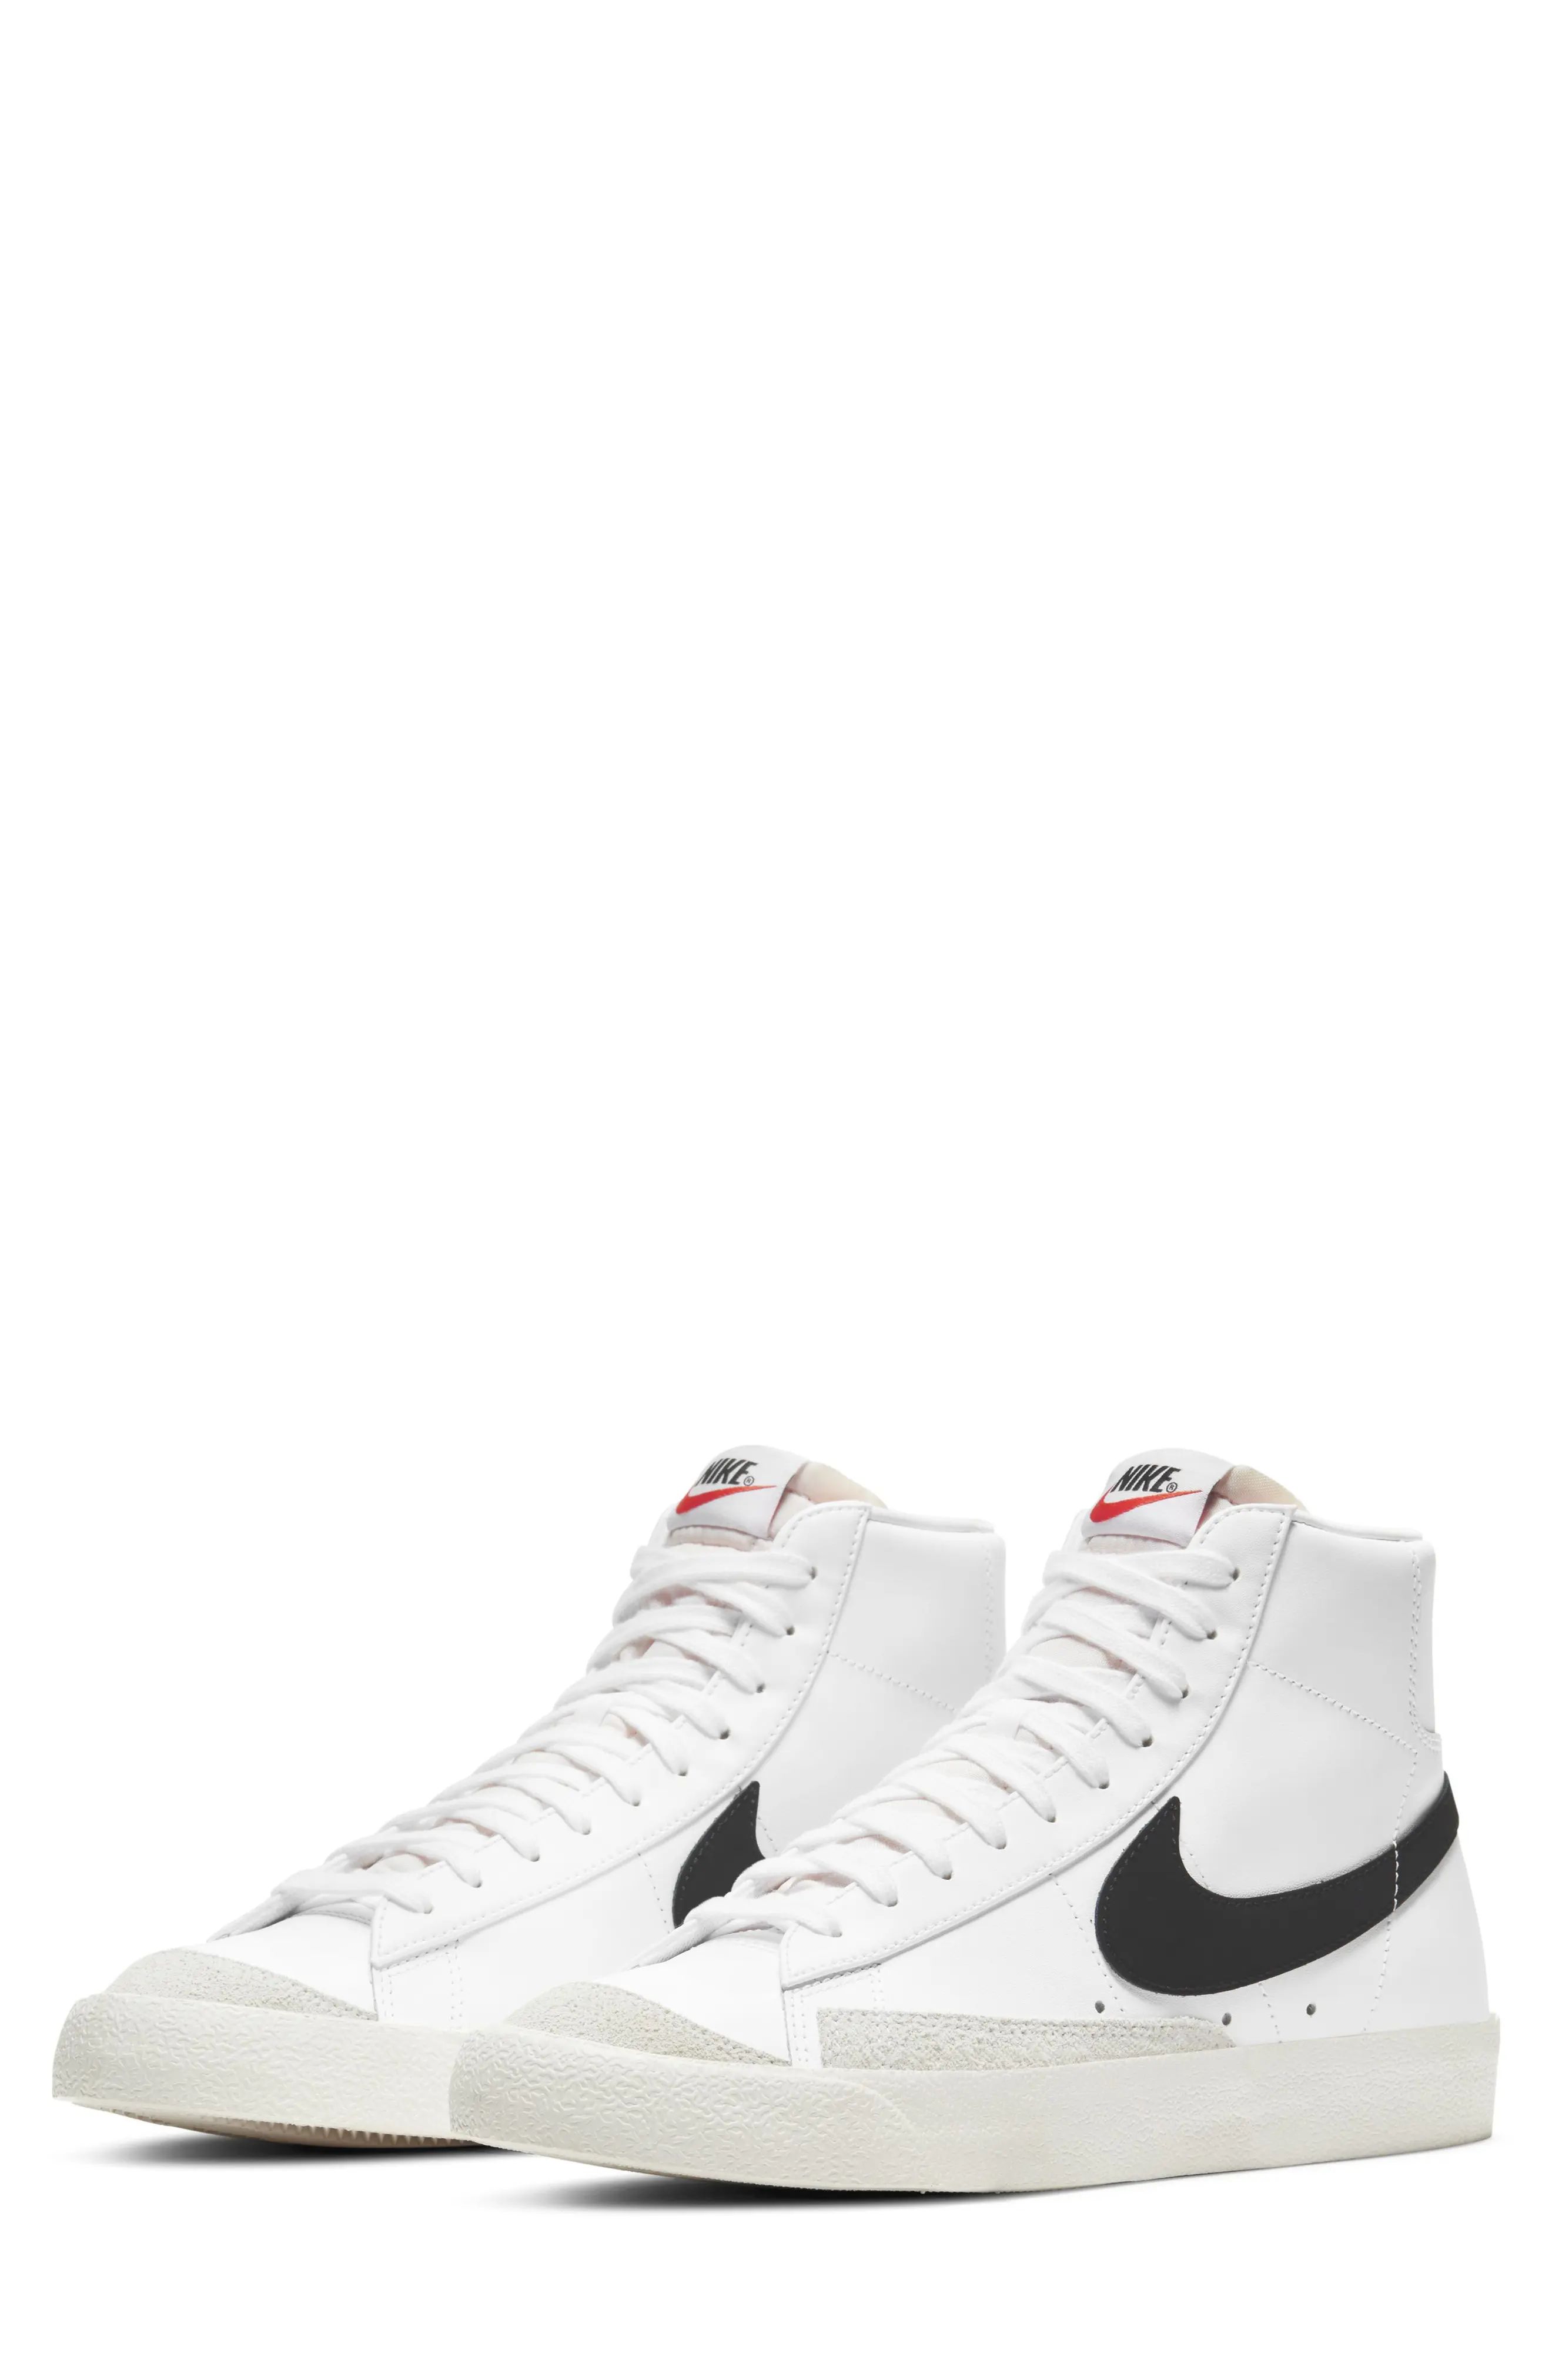 Nike Blazer Mid '77 Vintage Sneaker, Size 7.5 in White/black at Nordstrom | Nordstrom